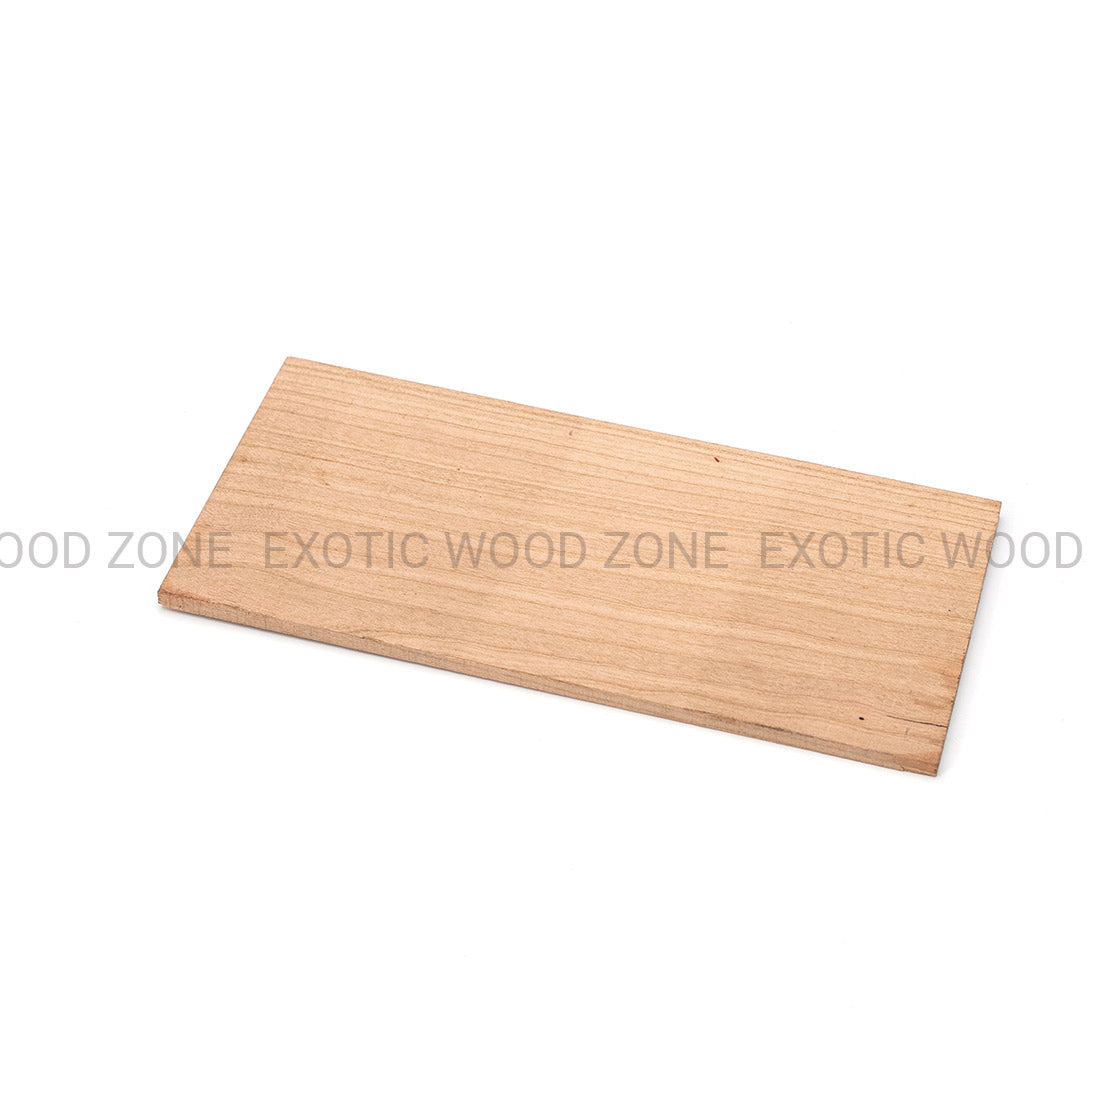 Cherry Guitar Headplate Wood Blank Exotic Wood Zone Headplates